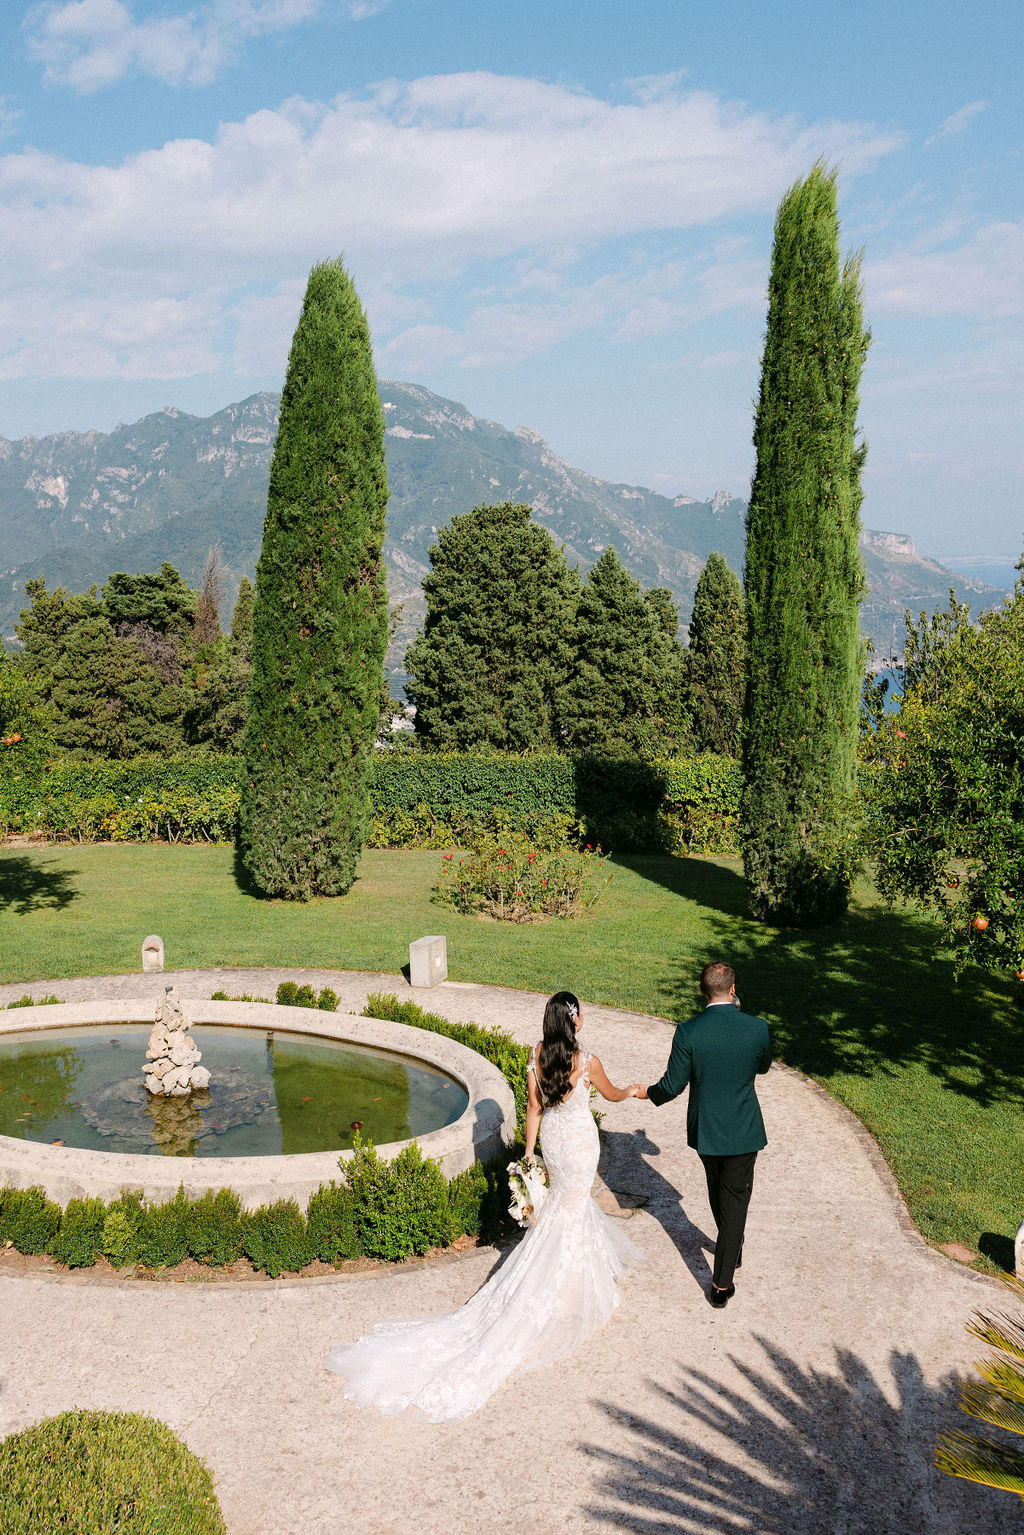 groom escorts bride through gardens at Villa Cimbrone wedding venue in Italy